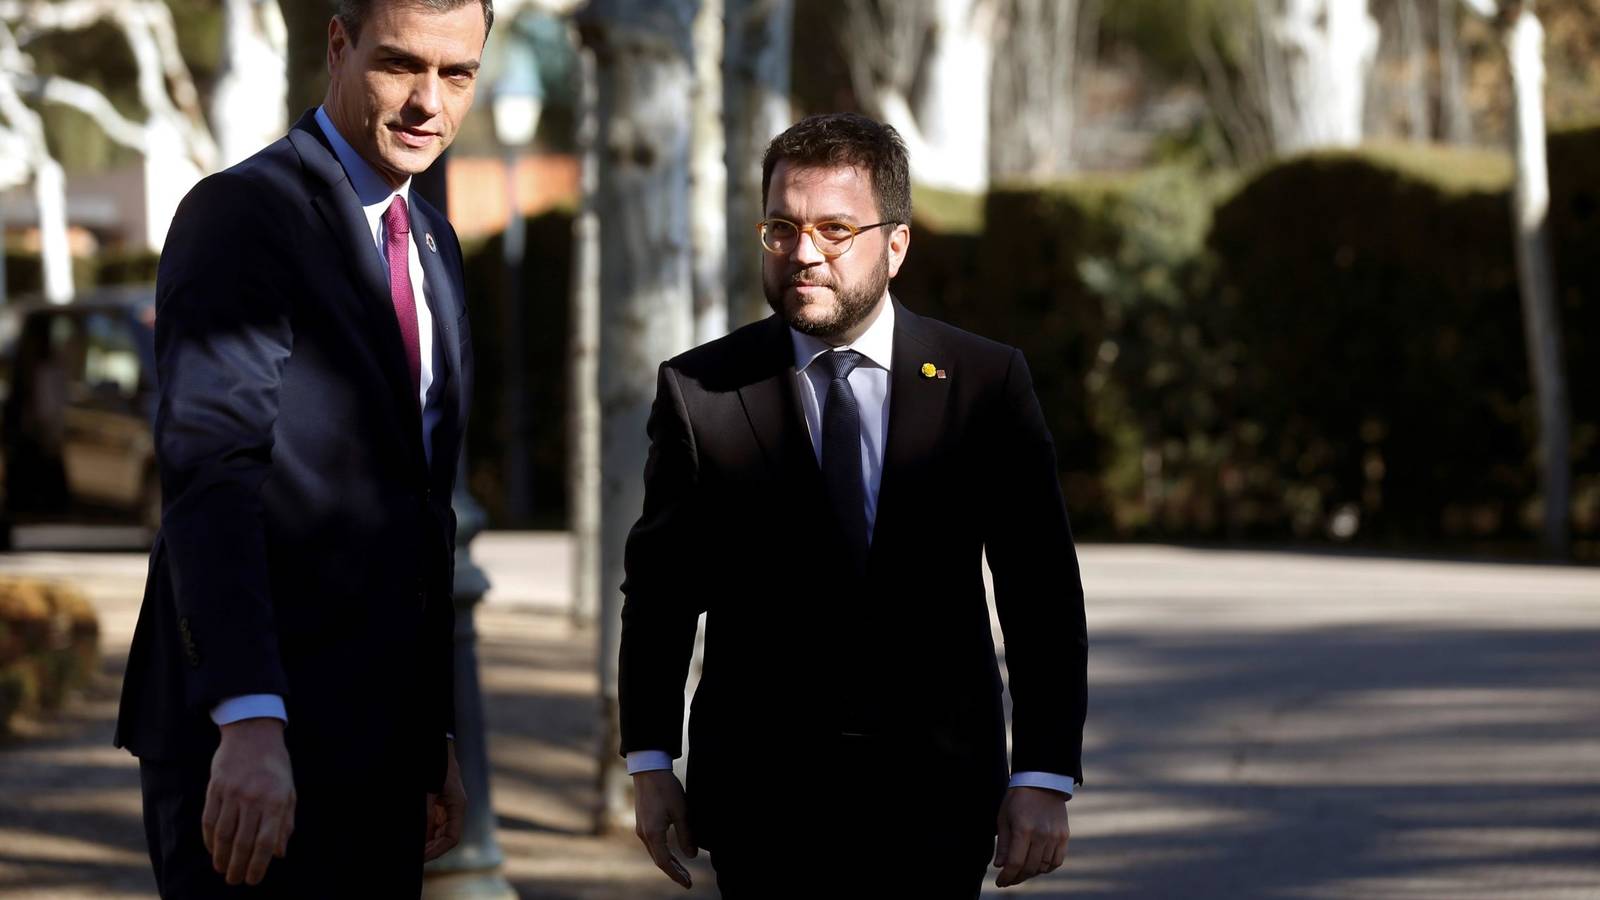 Fierbe Spania! Guvernul socialist vrea să-i grațieze pe liderii separatiști condamnați pentru referendumul privind independența Catalunyei